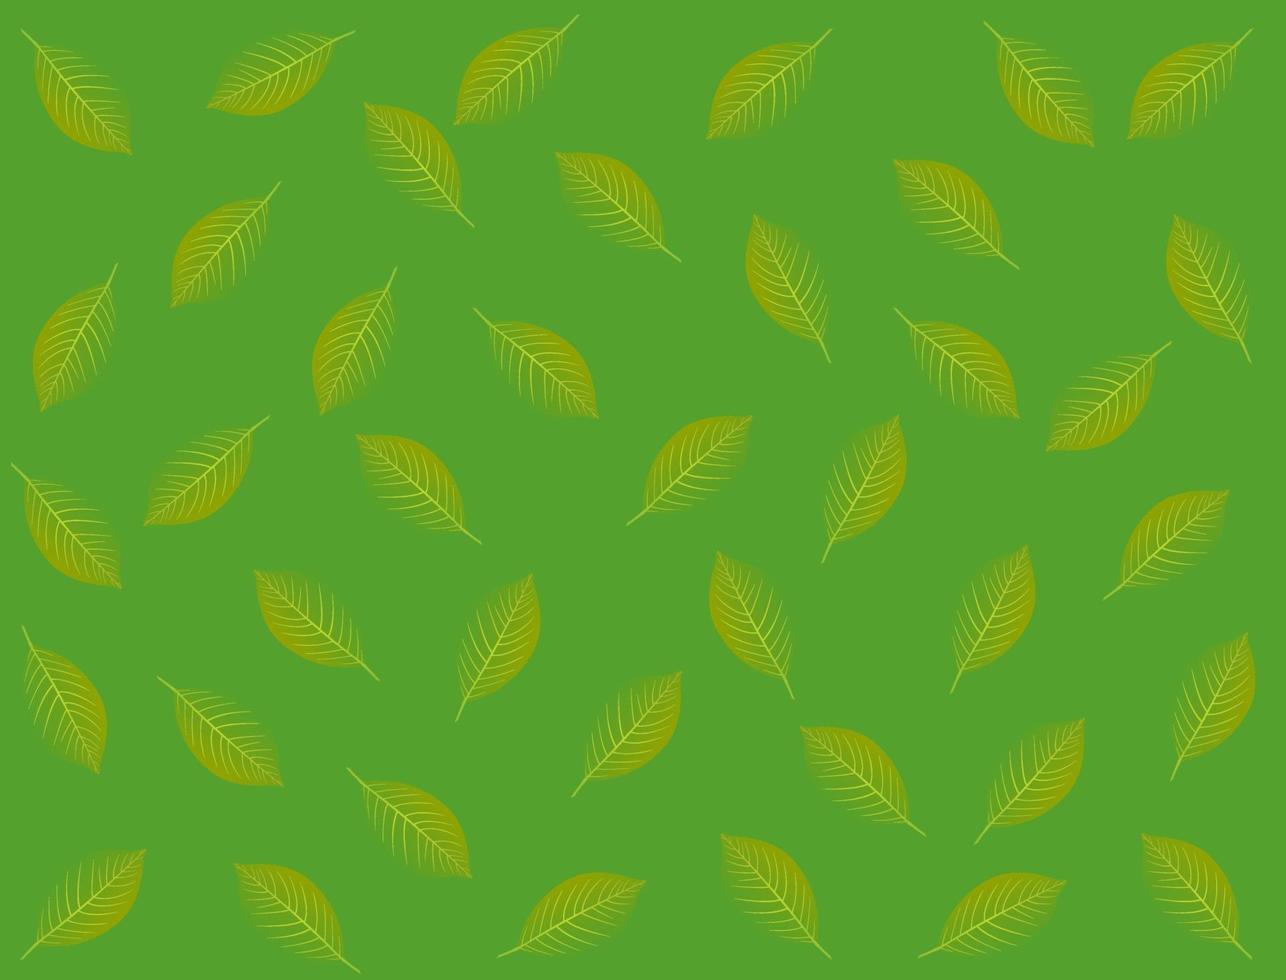 abstracte achtergrond in groene kleur met verspreide bladeren vector